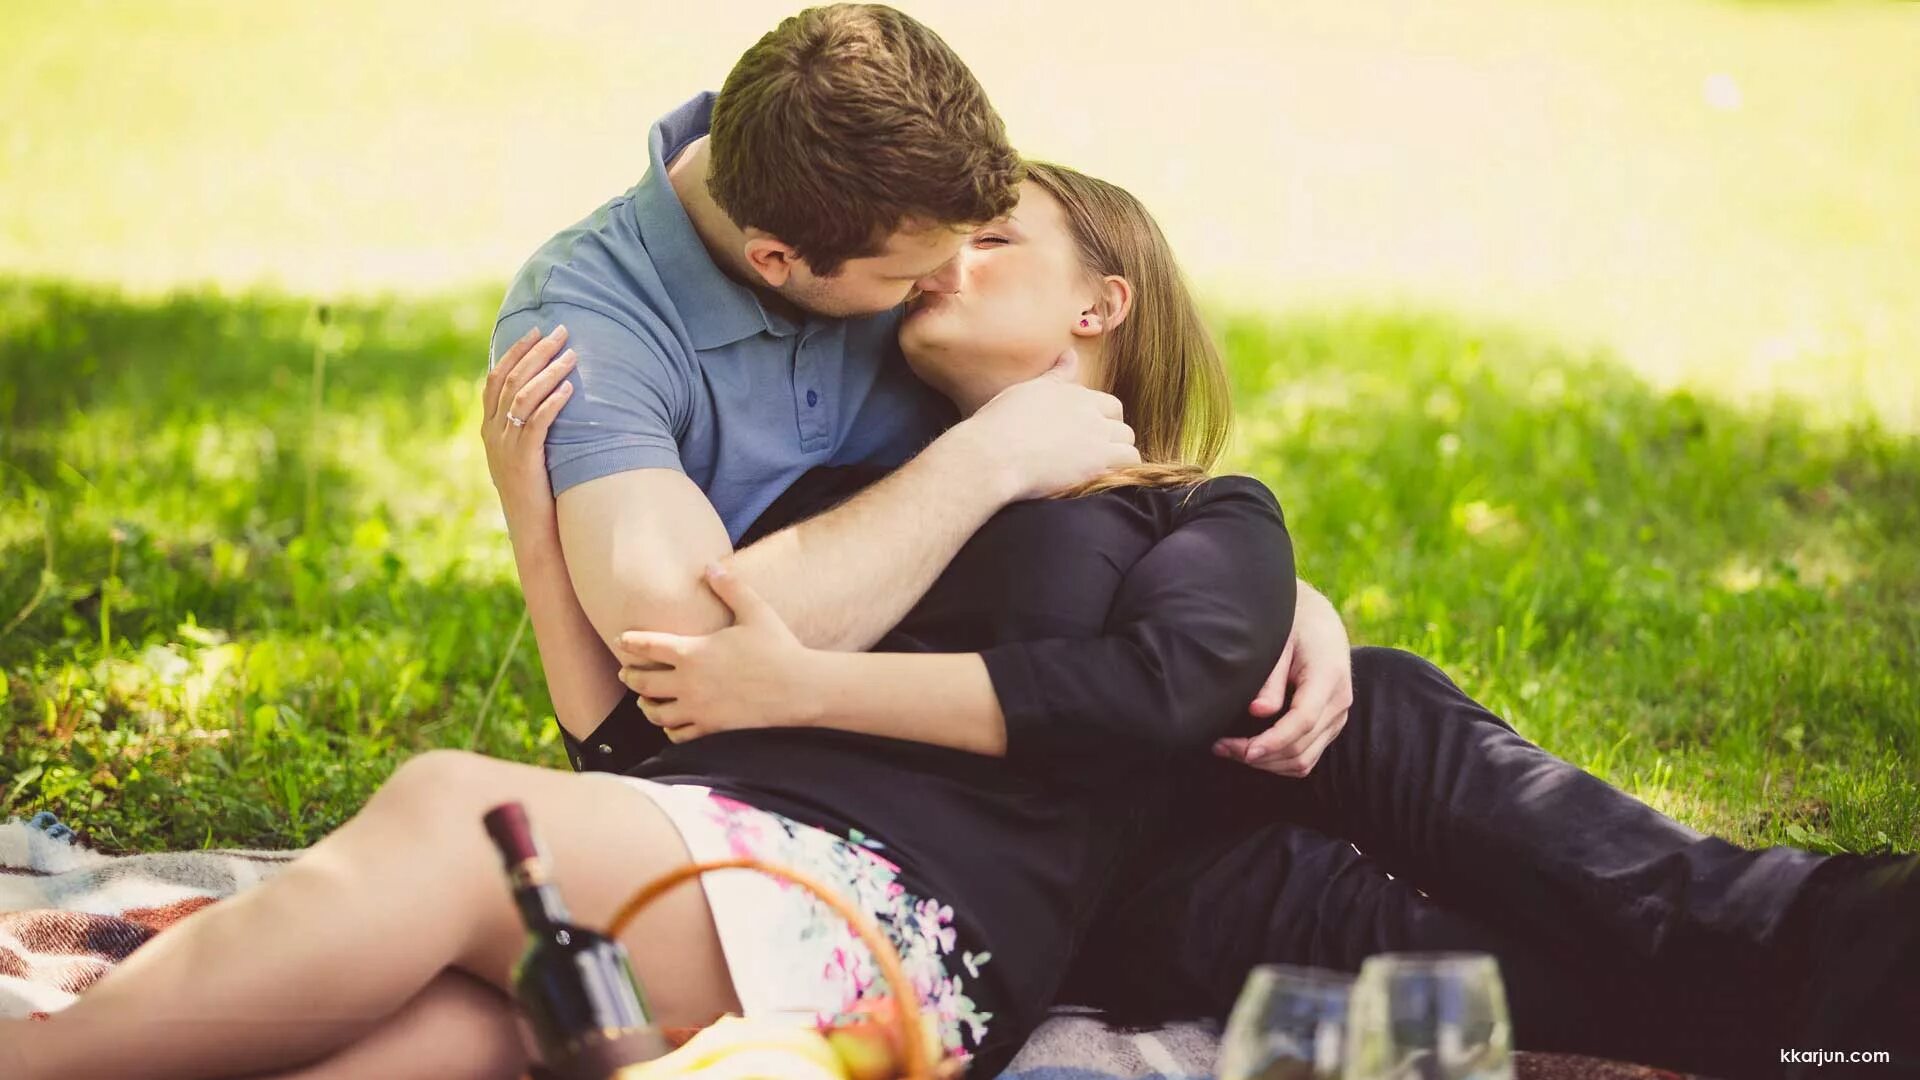 Подруги парней видео. Поцелуй на природе. Парень целует девушку в парке. Страстный поцелуй на природе. Девушка и парень в парке поцелуй.